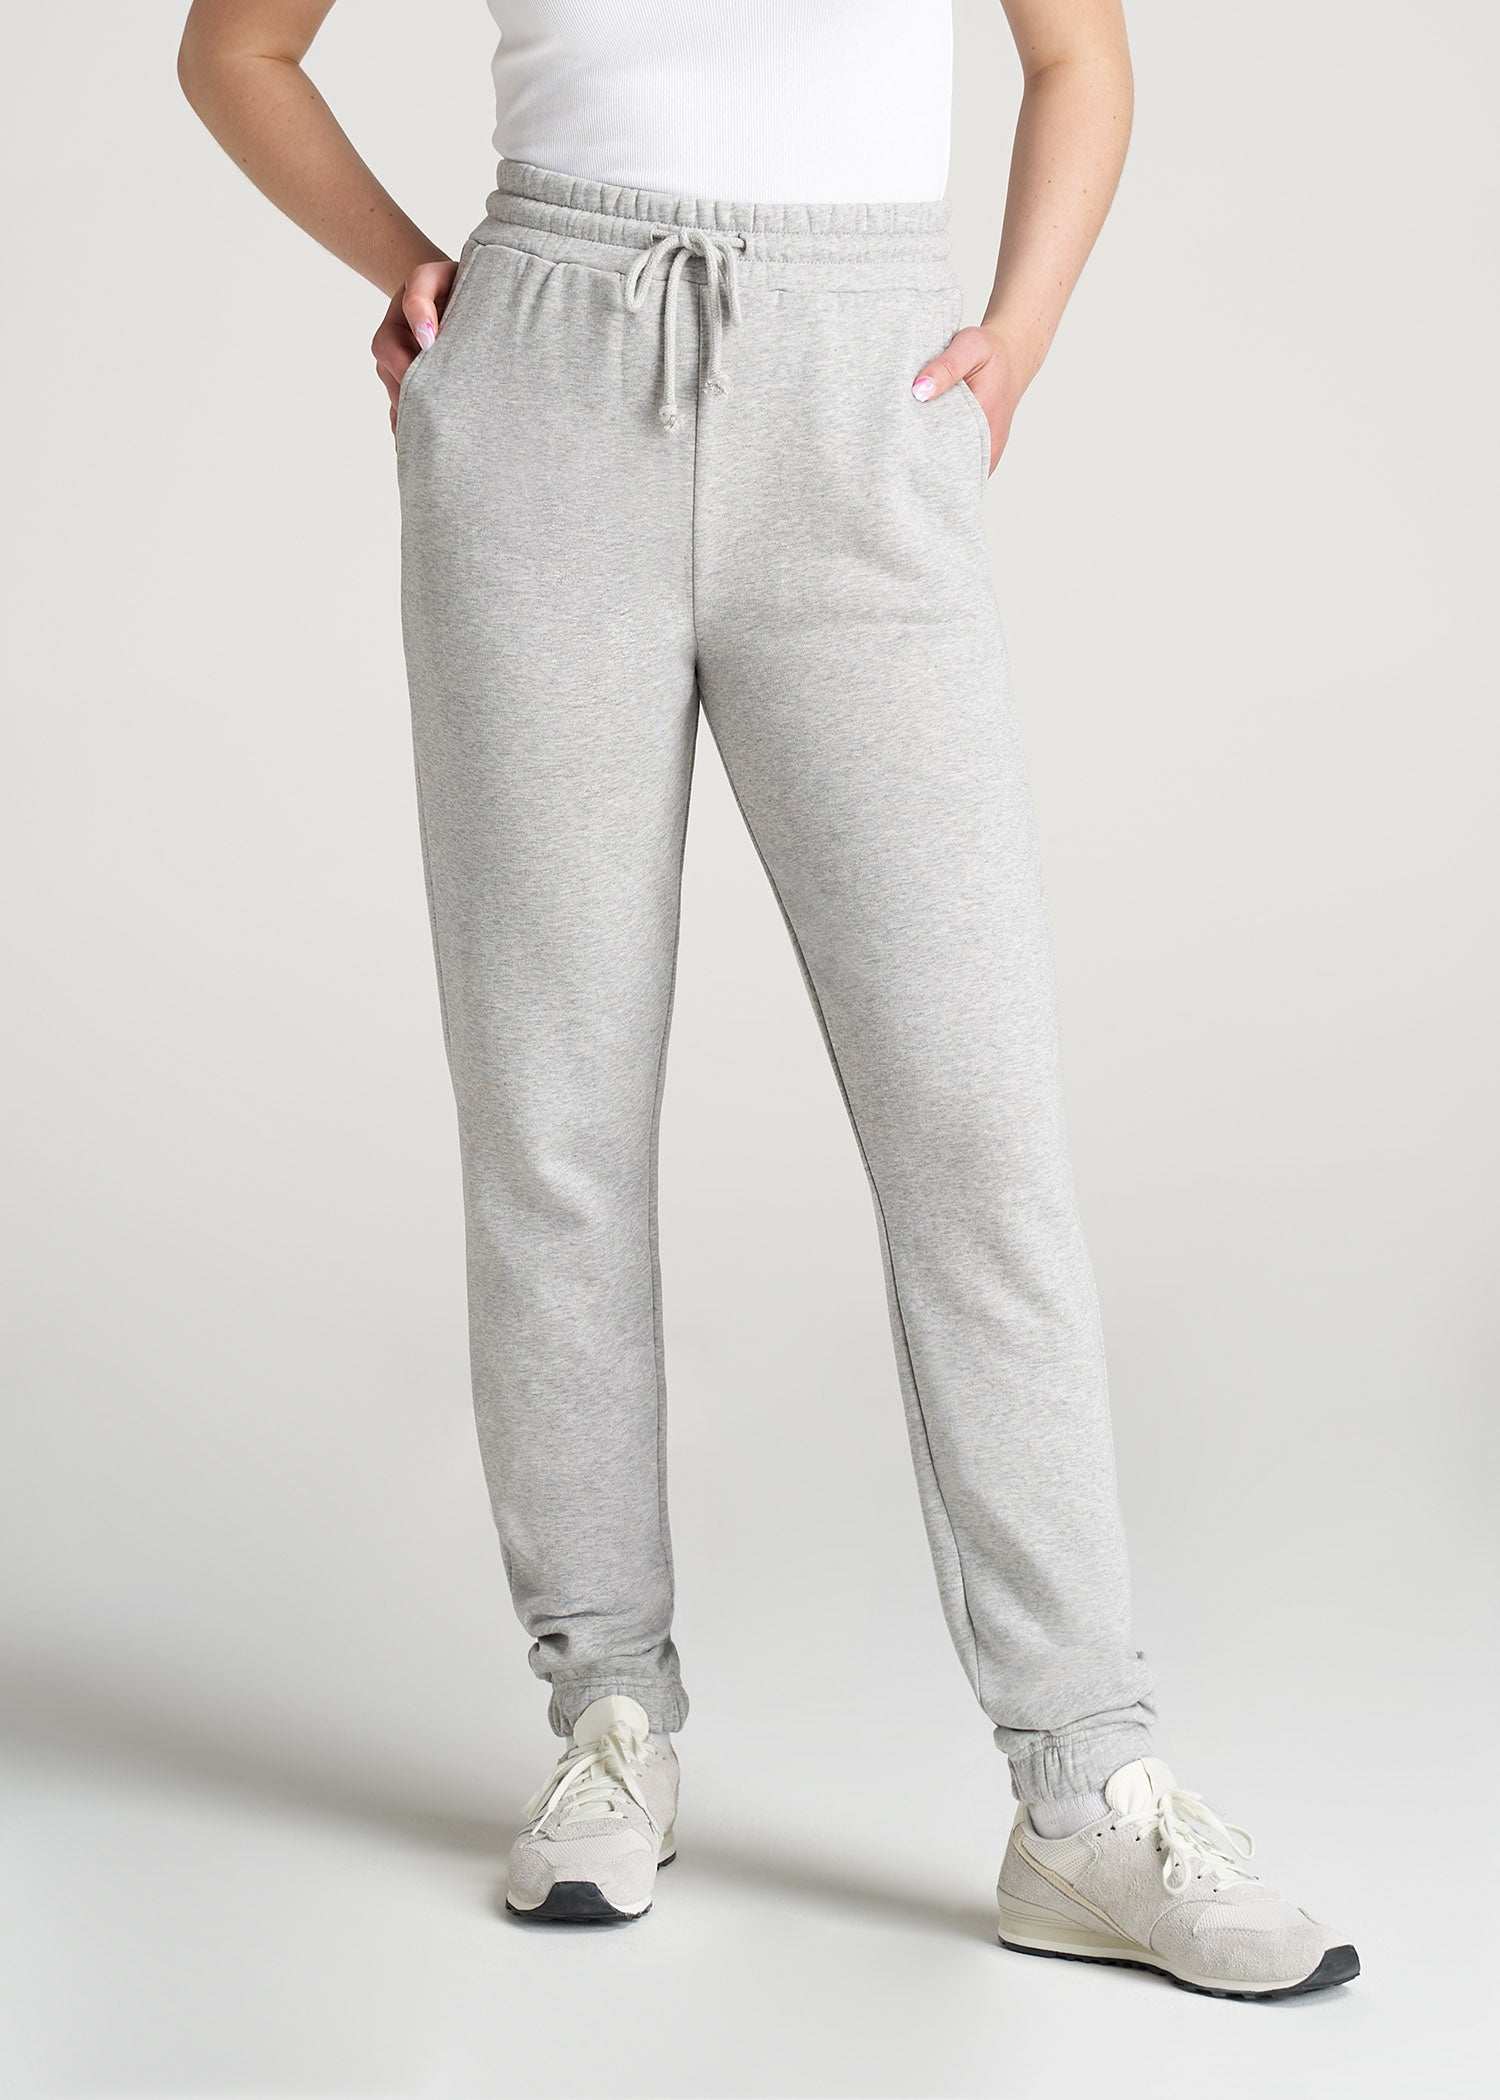 Wearever Fleece Open-Bottom Sweatpants for Tall Women in Charcoal Mix